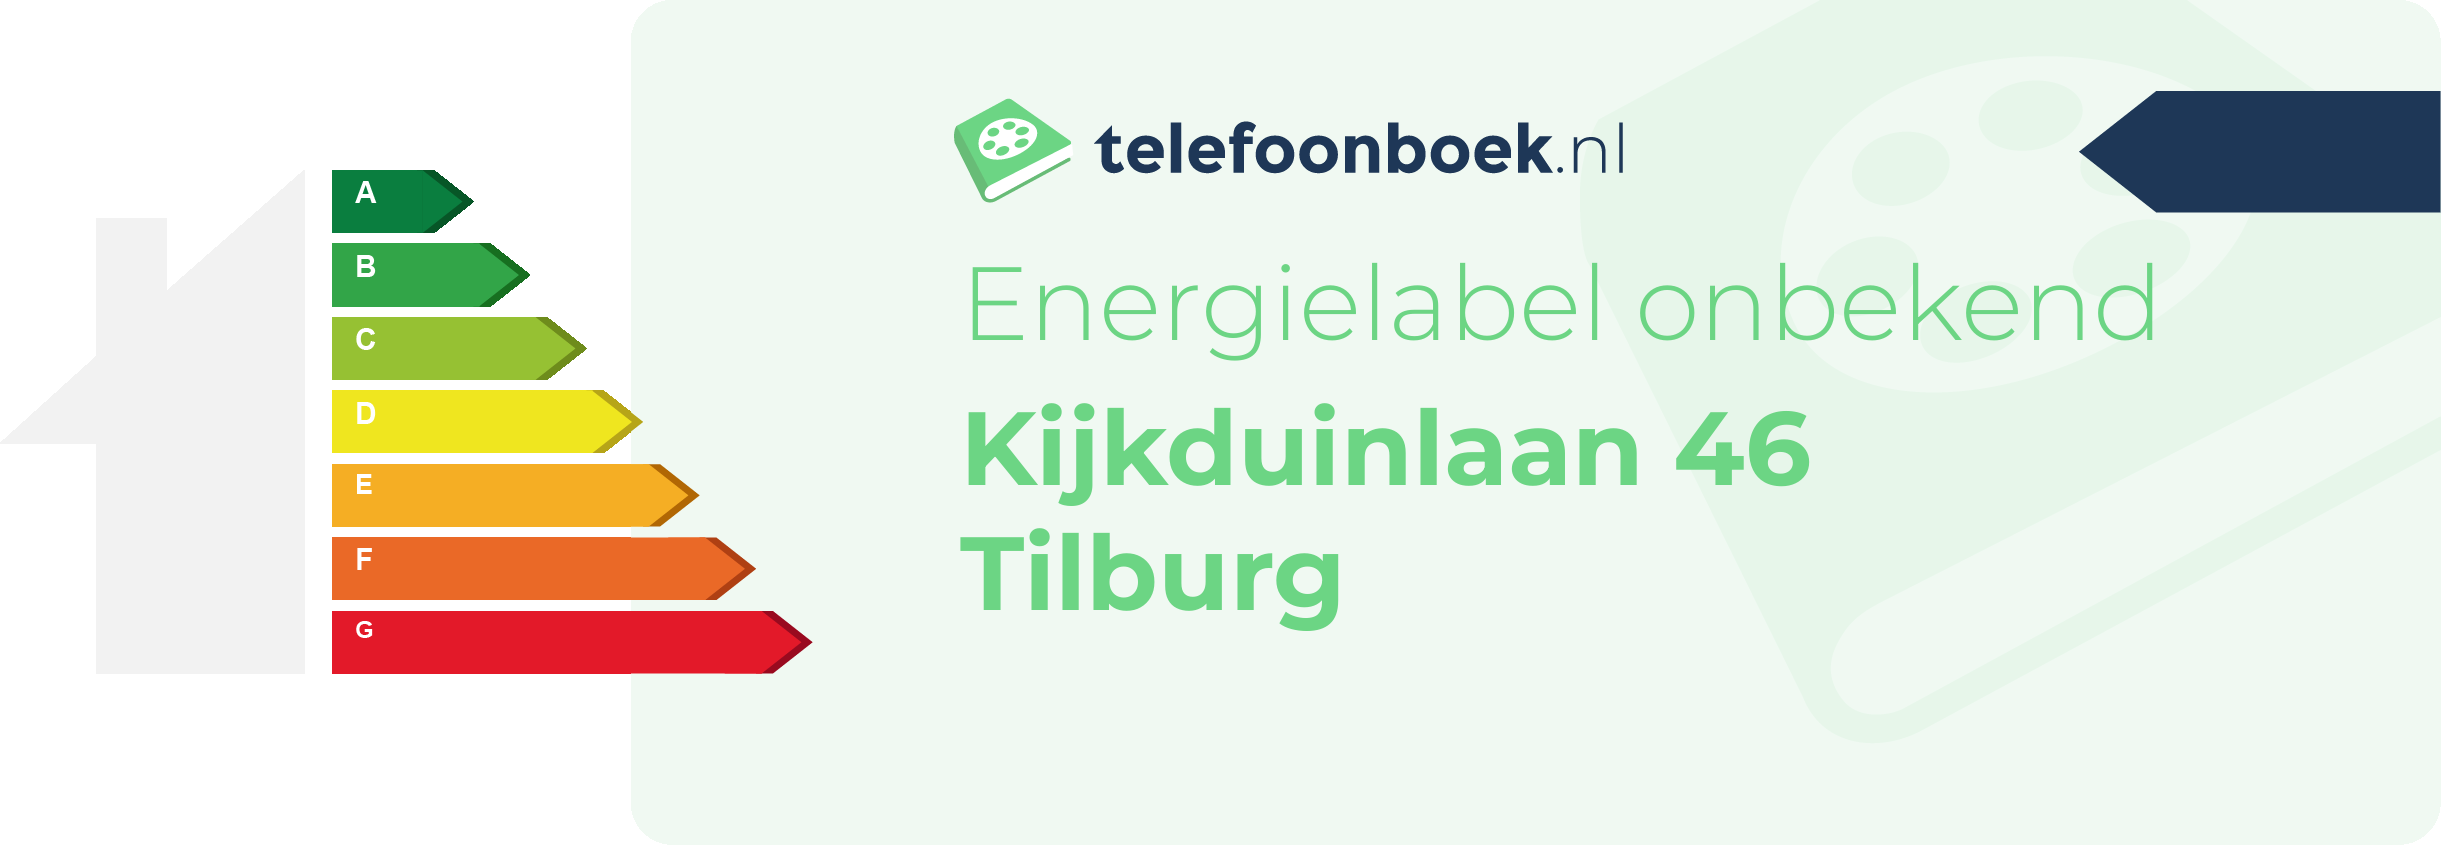 Energielabel Kijkduinlaan 46 Tilburg